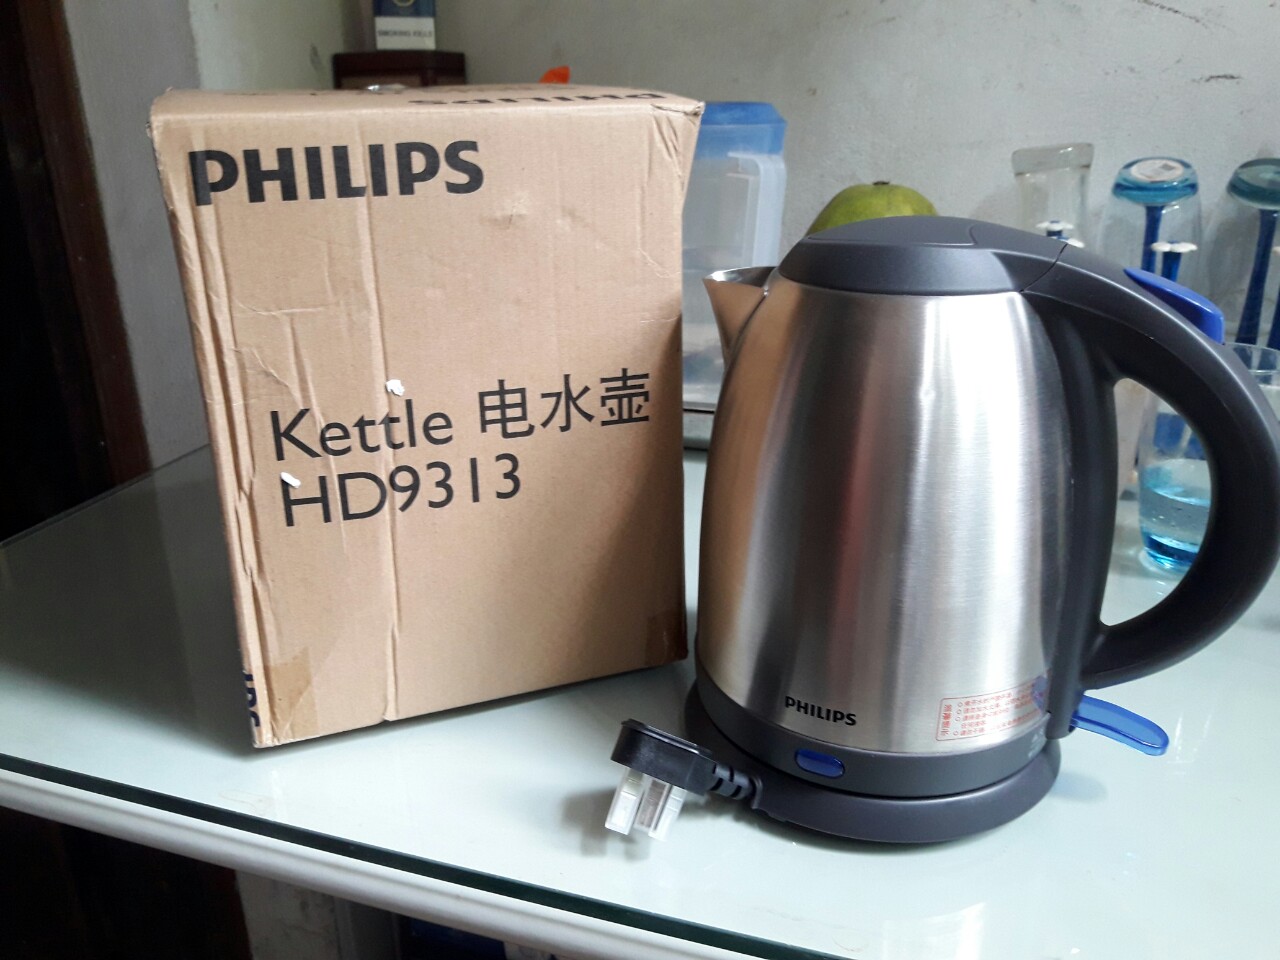 Thanh lý ấm đun siêu tốc Philips HD9313